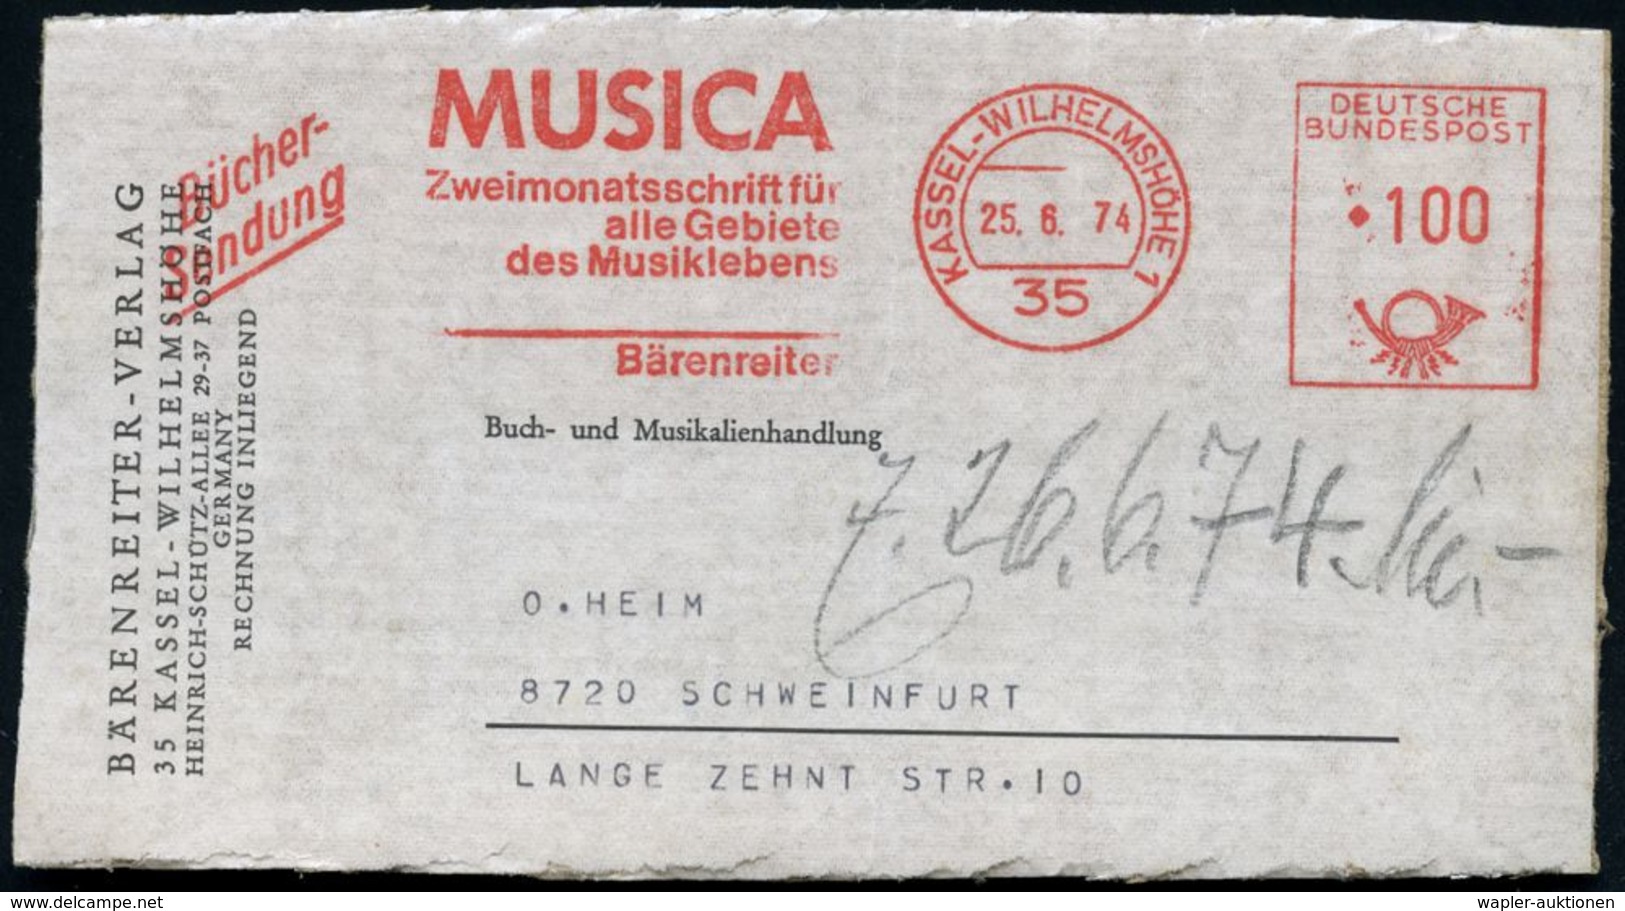 MUSIK-VERLAGE : 35 KASSEL-WILHELMSHÖHE 1/ MUSICA/ Zweimonatsschrift../ Bärenreiter 1974 (25.6.) AFS 100 Pf. + Zusatz "Bü - Musica